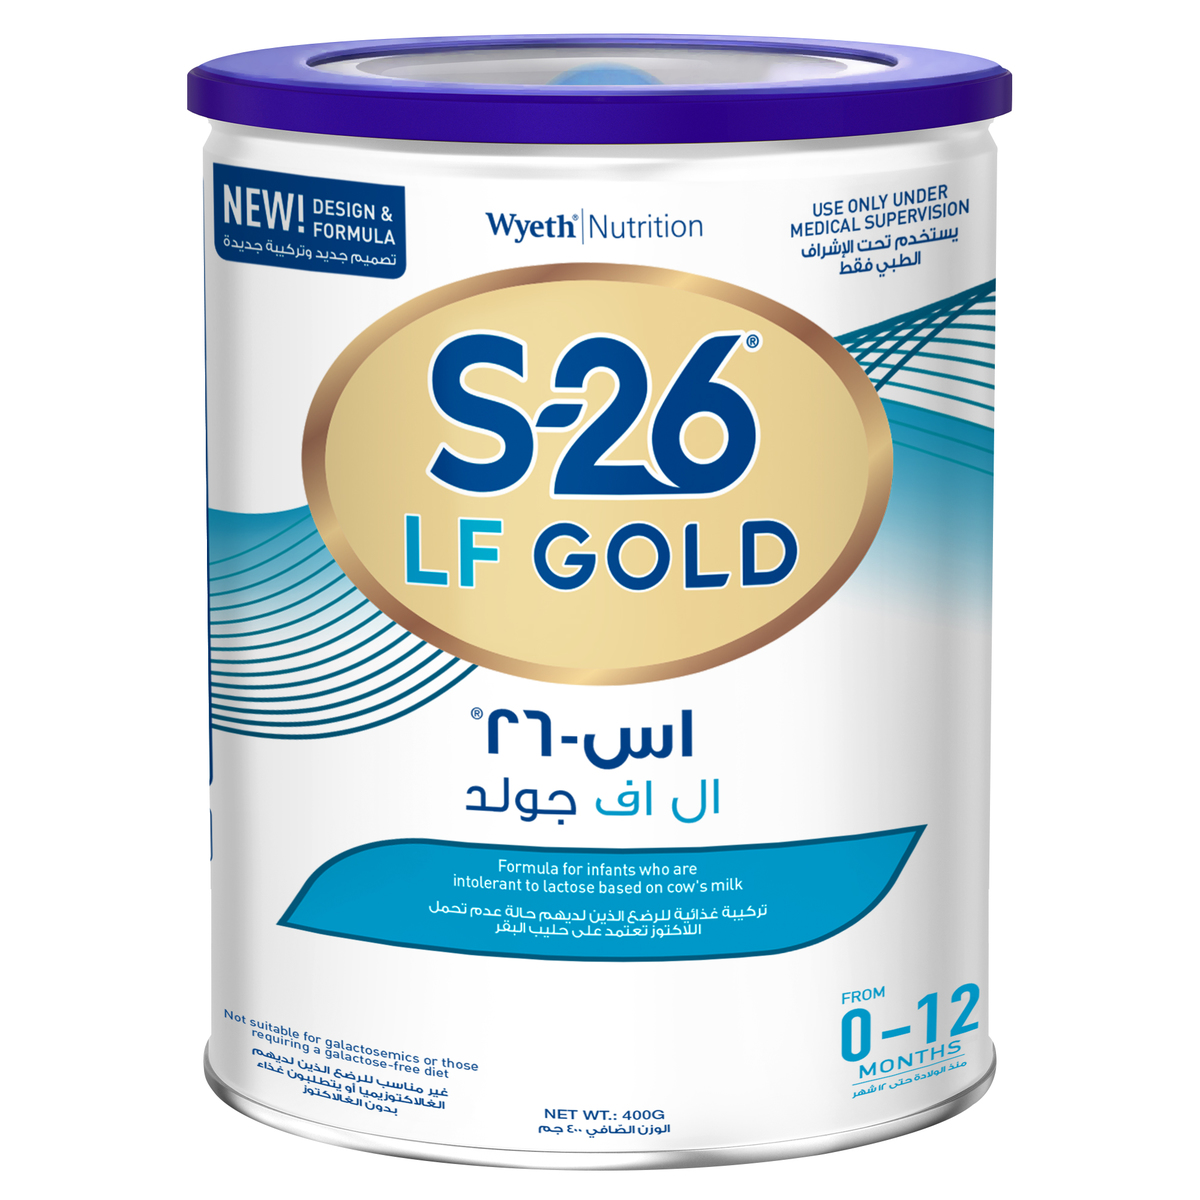 حليب أس 26 أل أف جولد S26 Lf Gold مخصص للأطفال حديثي الولادة سوق الدواء